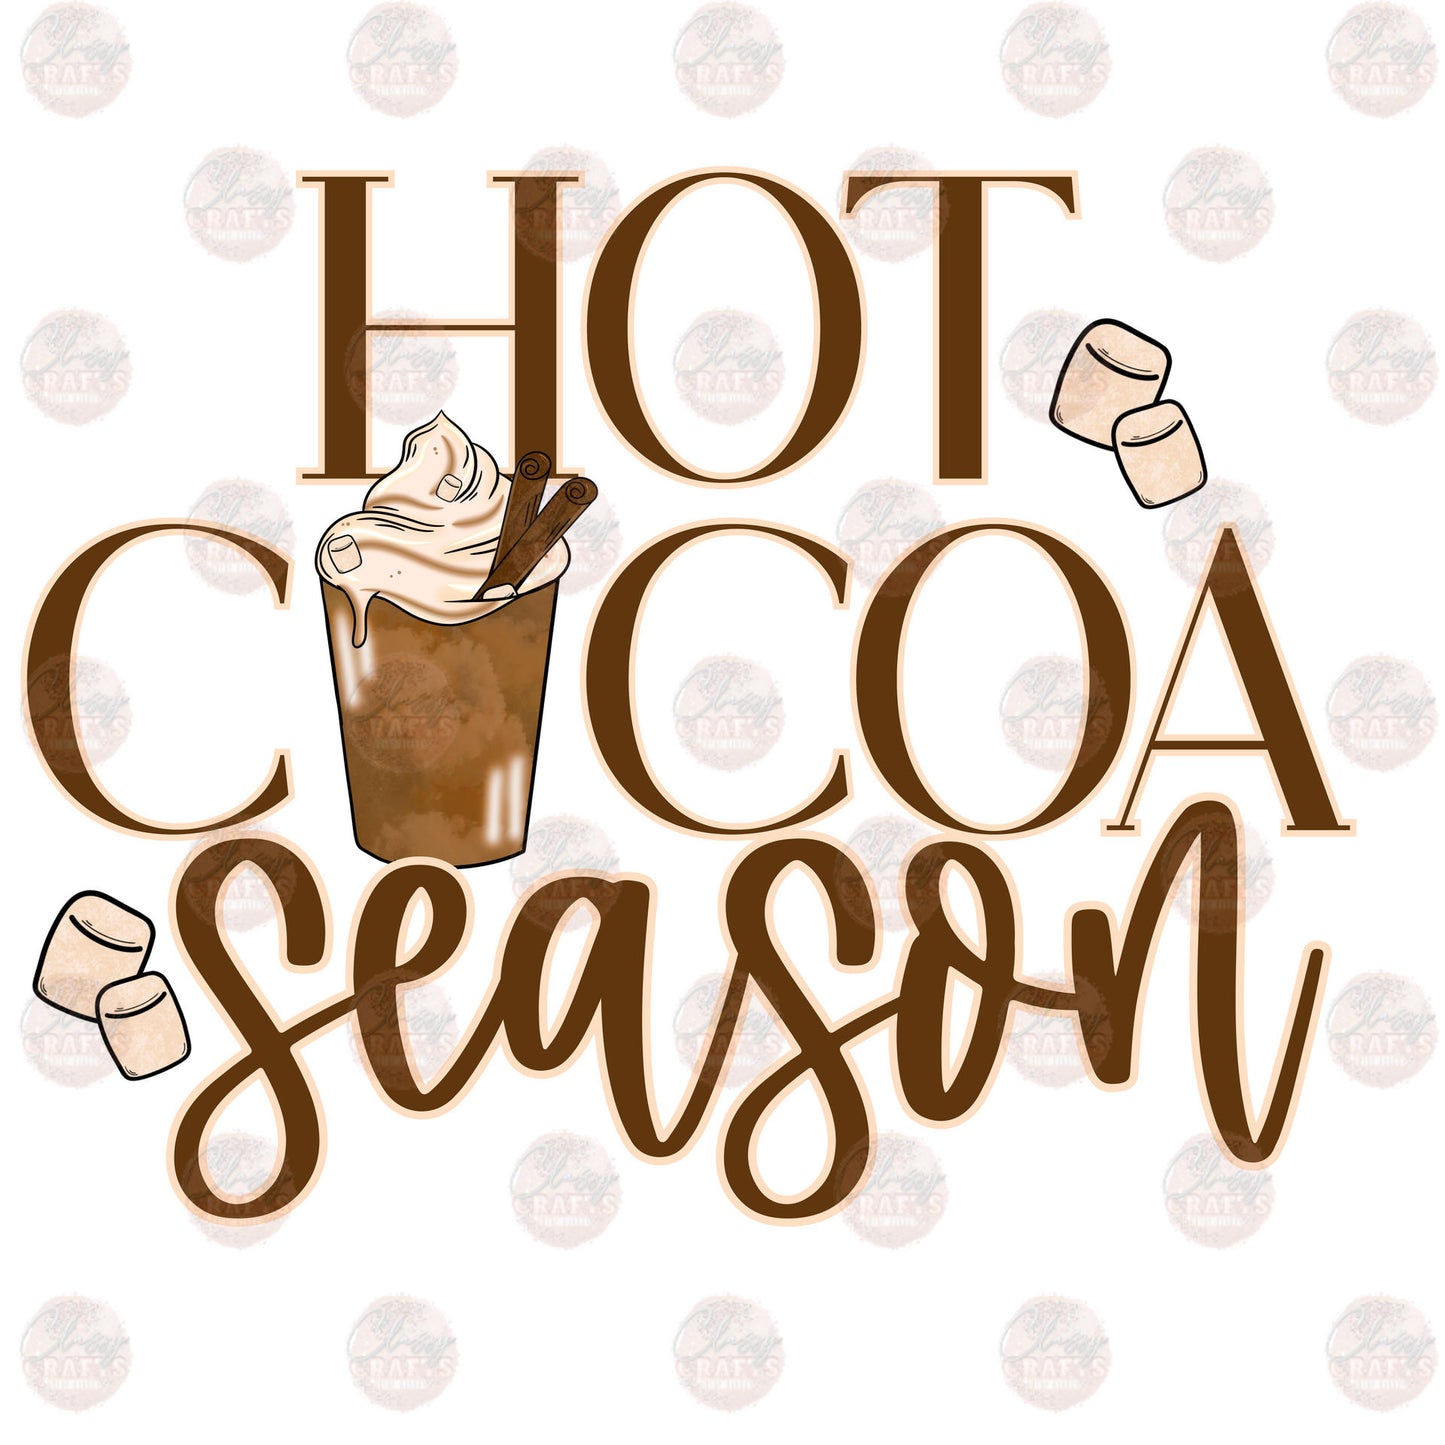 Hot Cocoa & Marshmallow Season - Sublimation Transfer